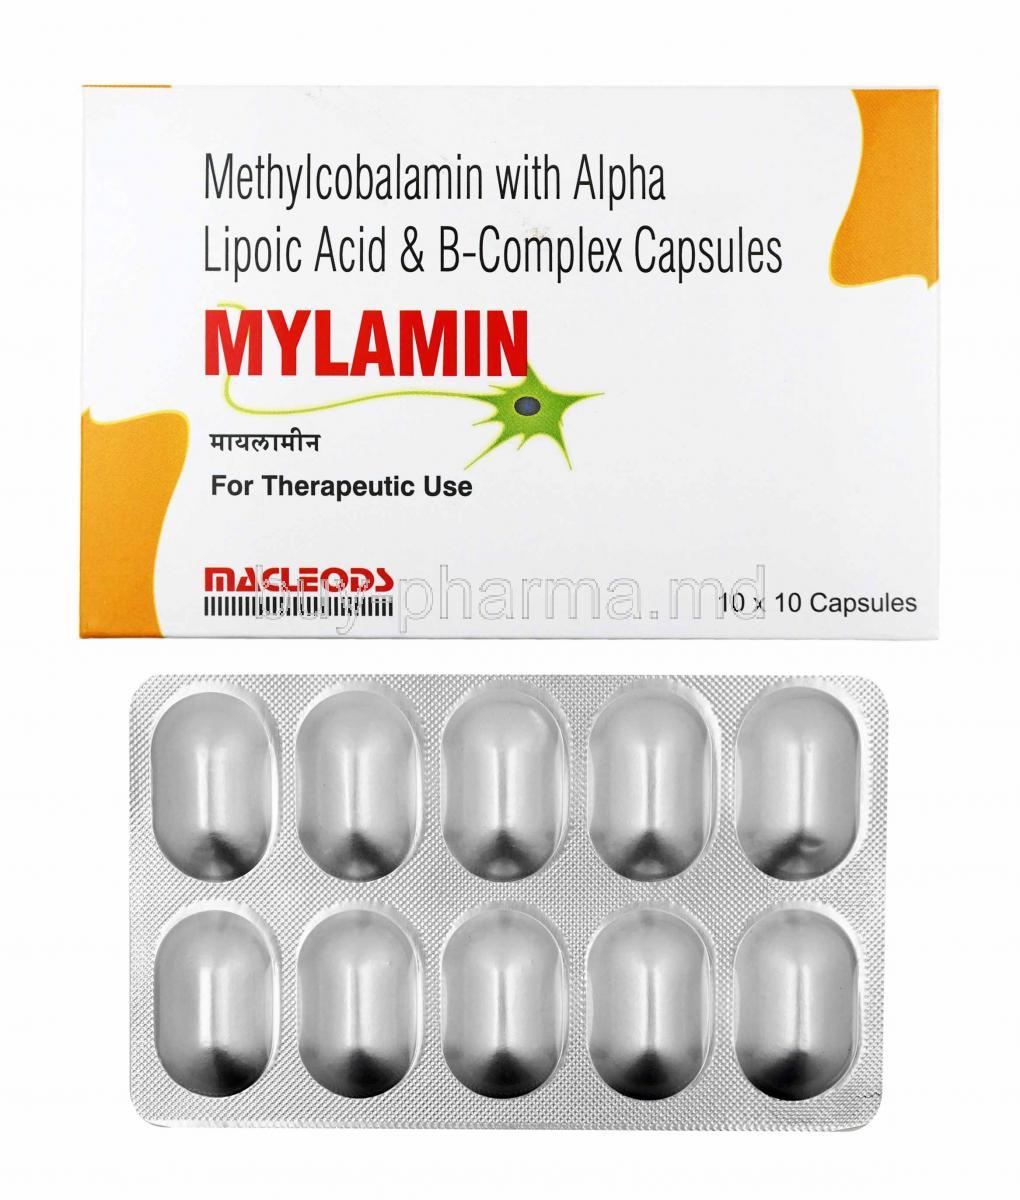 Mylamin box and capsules